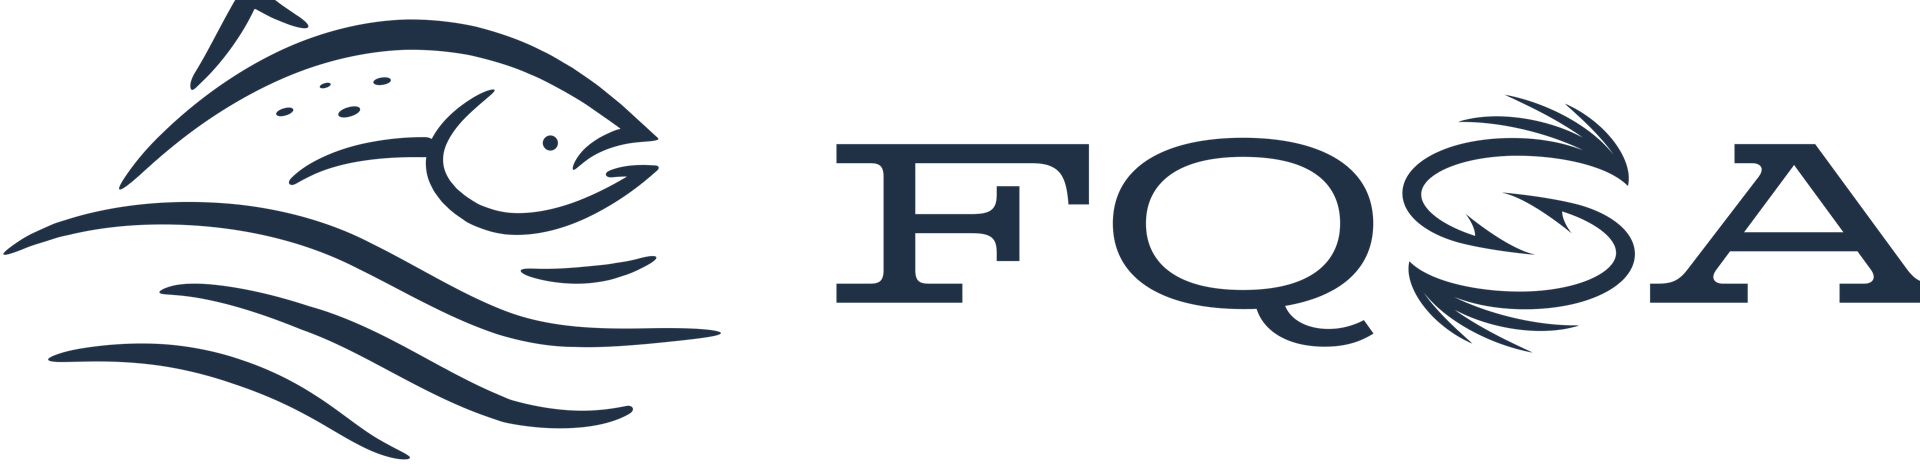 Logo FQSA